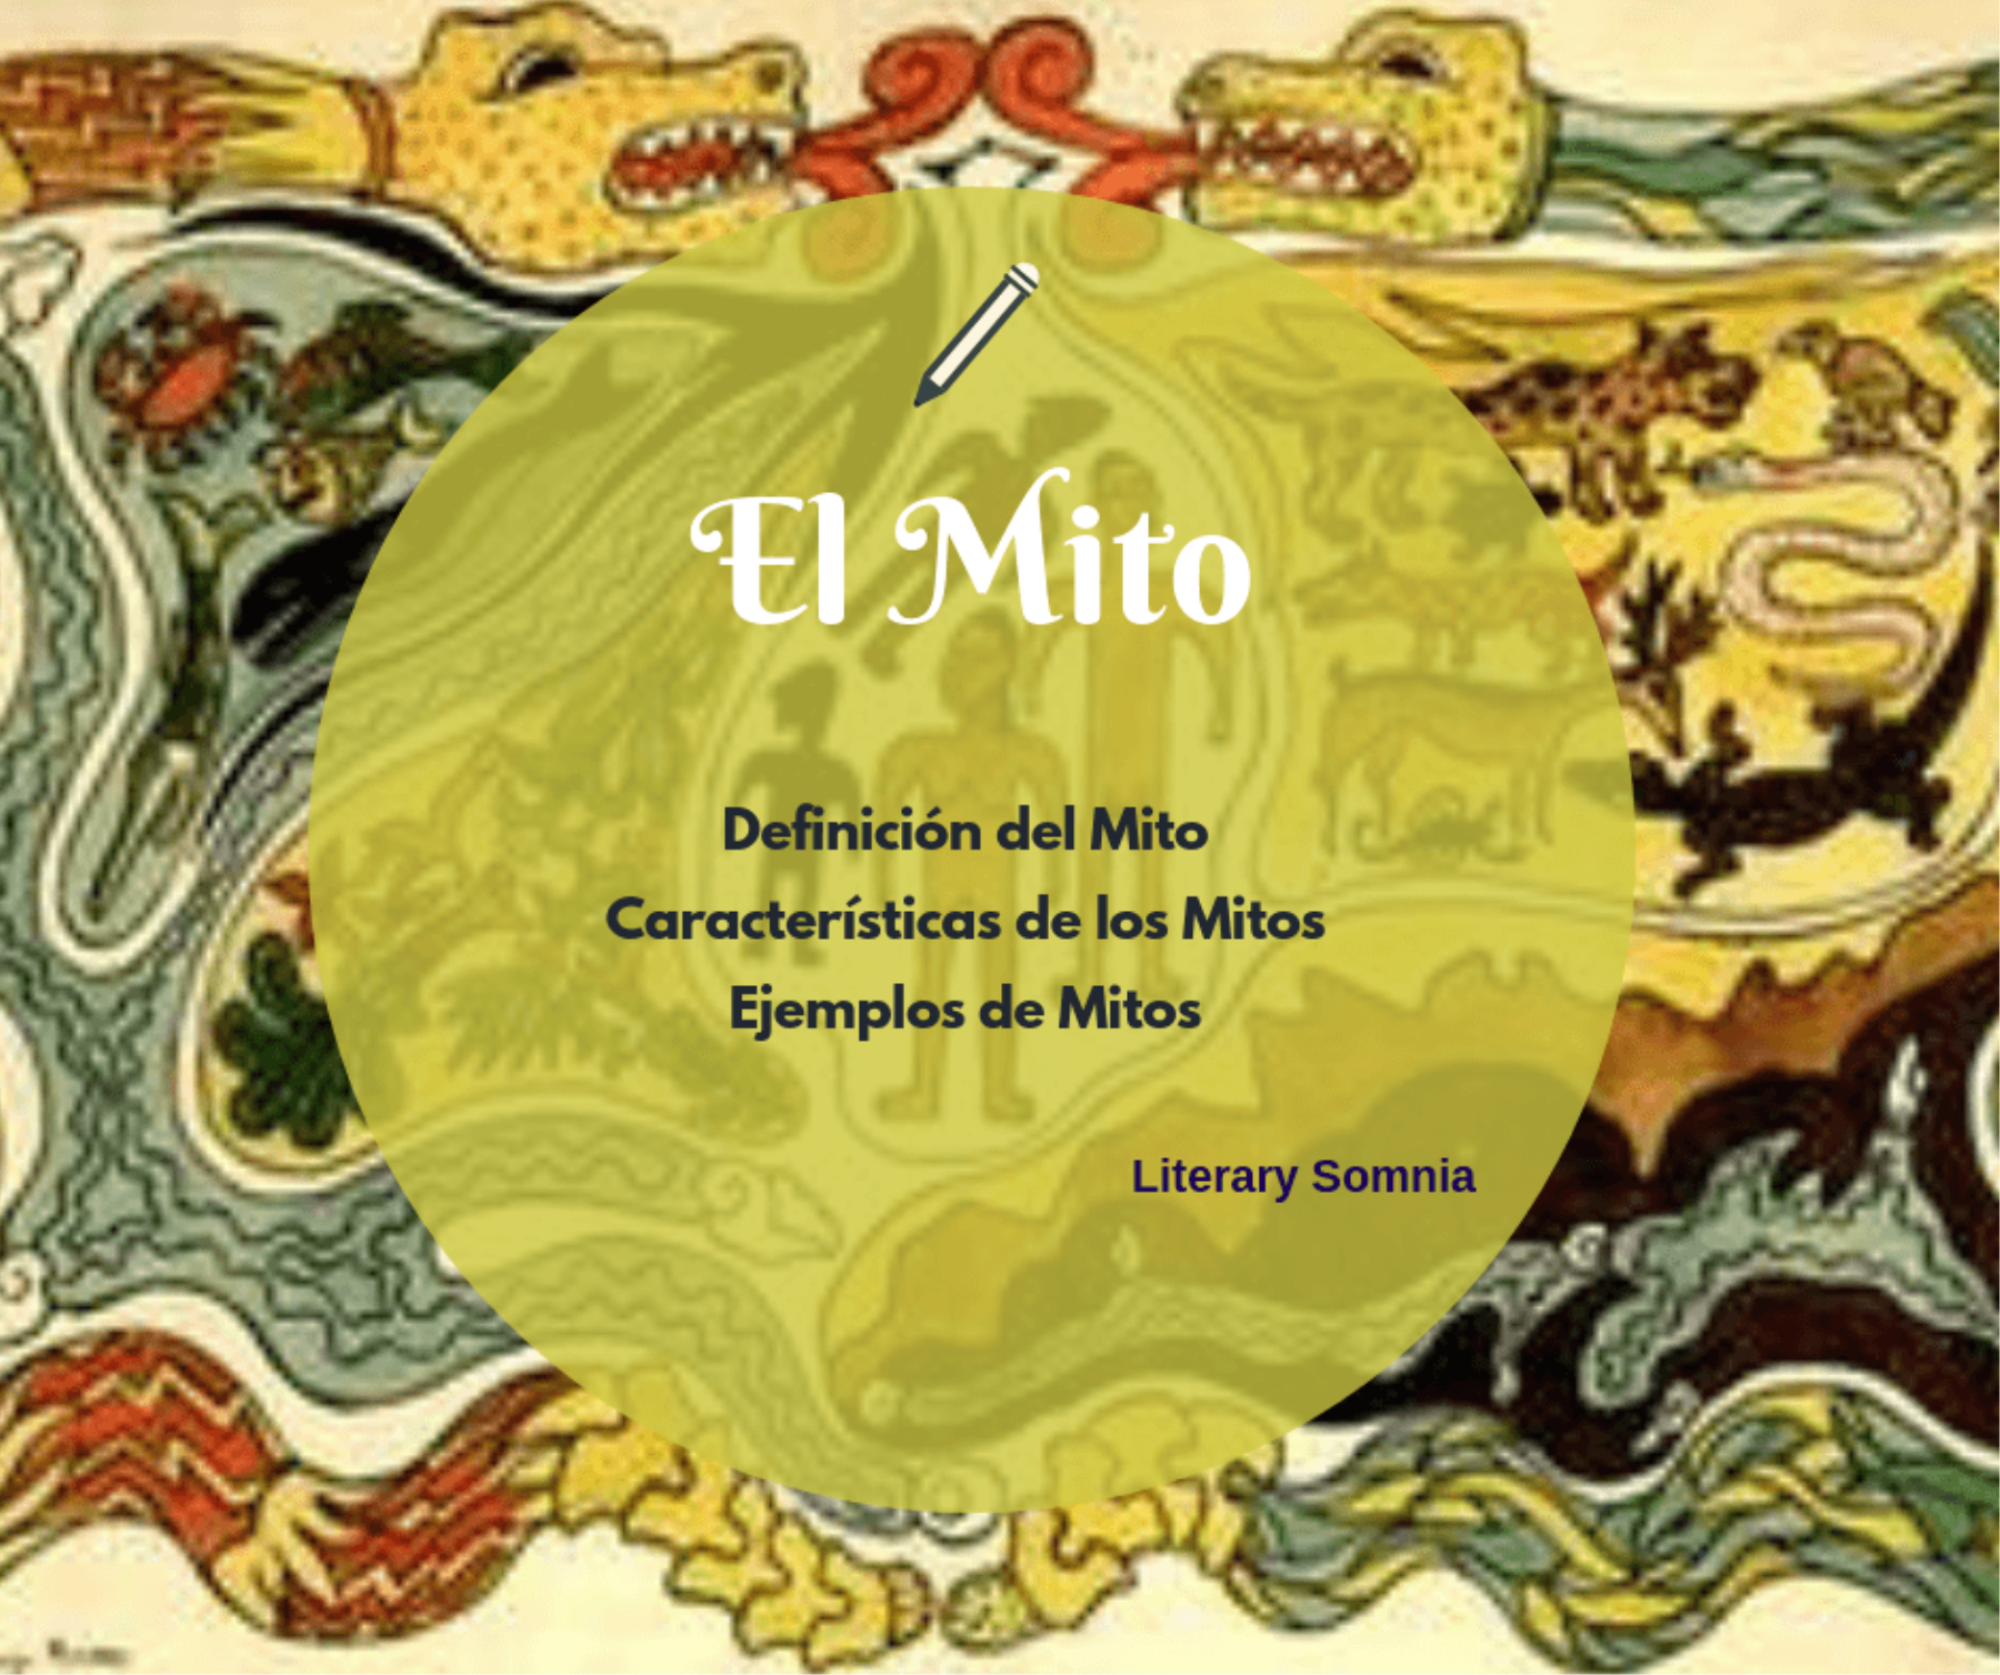 Chapoteo Estribillo Sur oeste Mito ¿Qué es el Mito? Definición y características del MITO